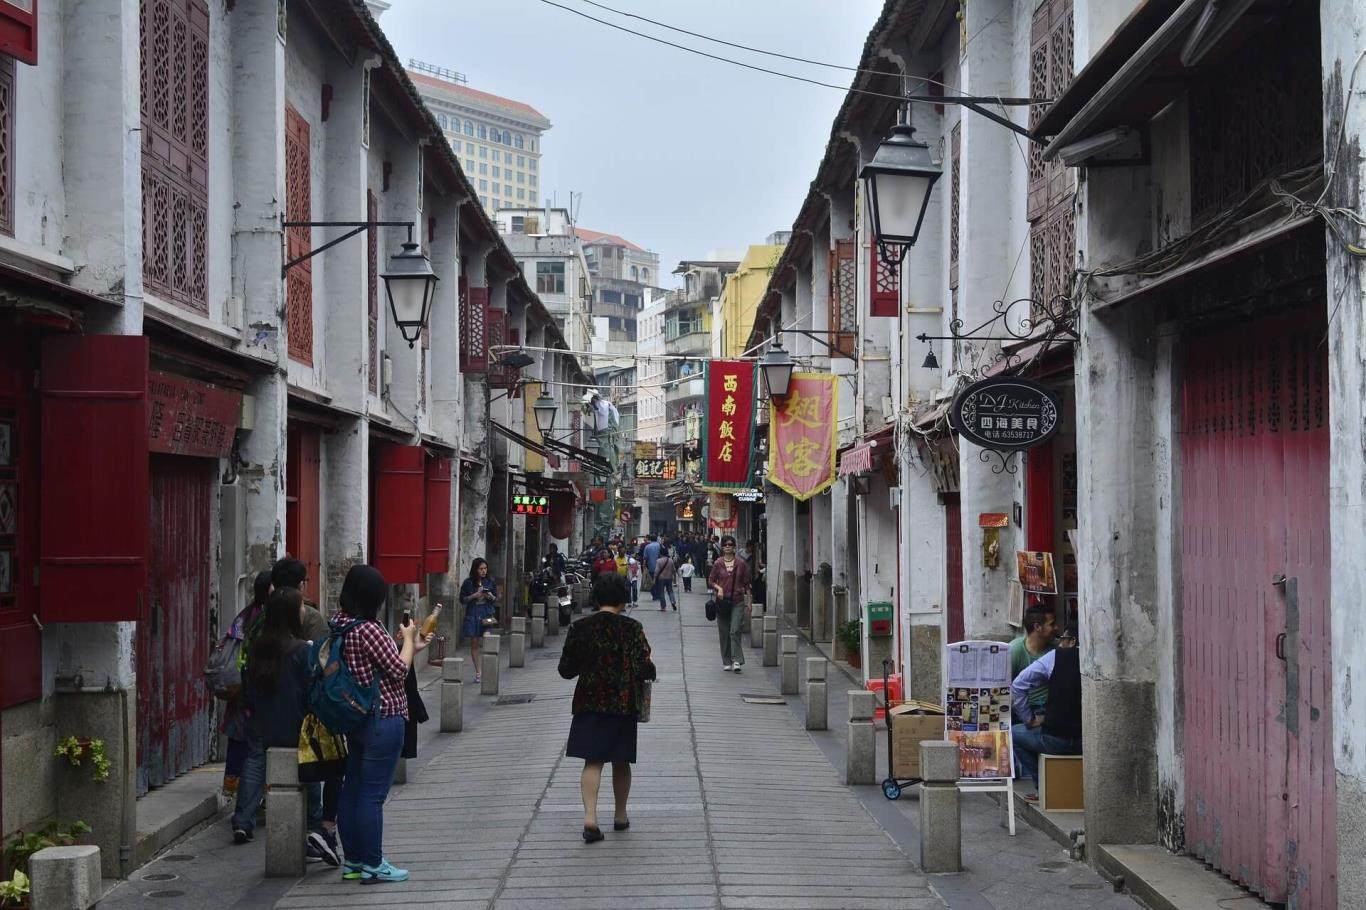 Thỏa sức mua sắm tại những “thiên đường” này ở Macao, Trung Quốc